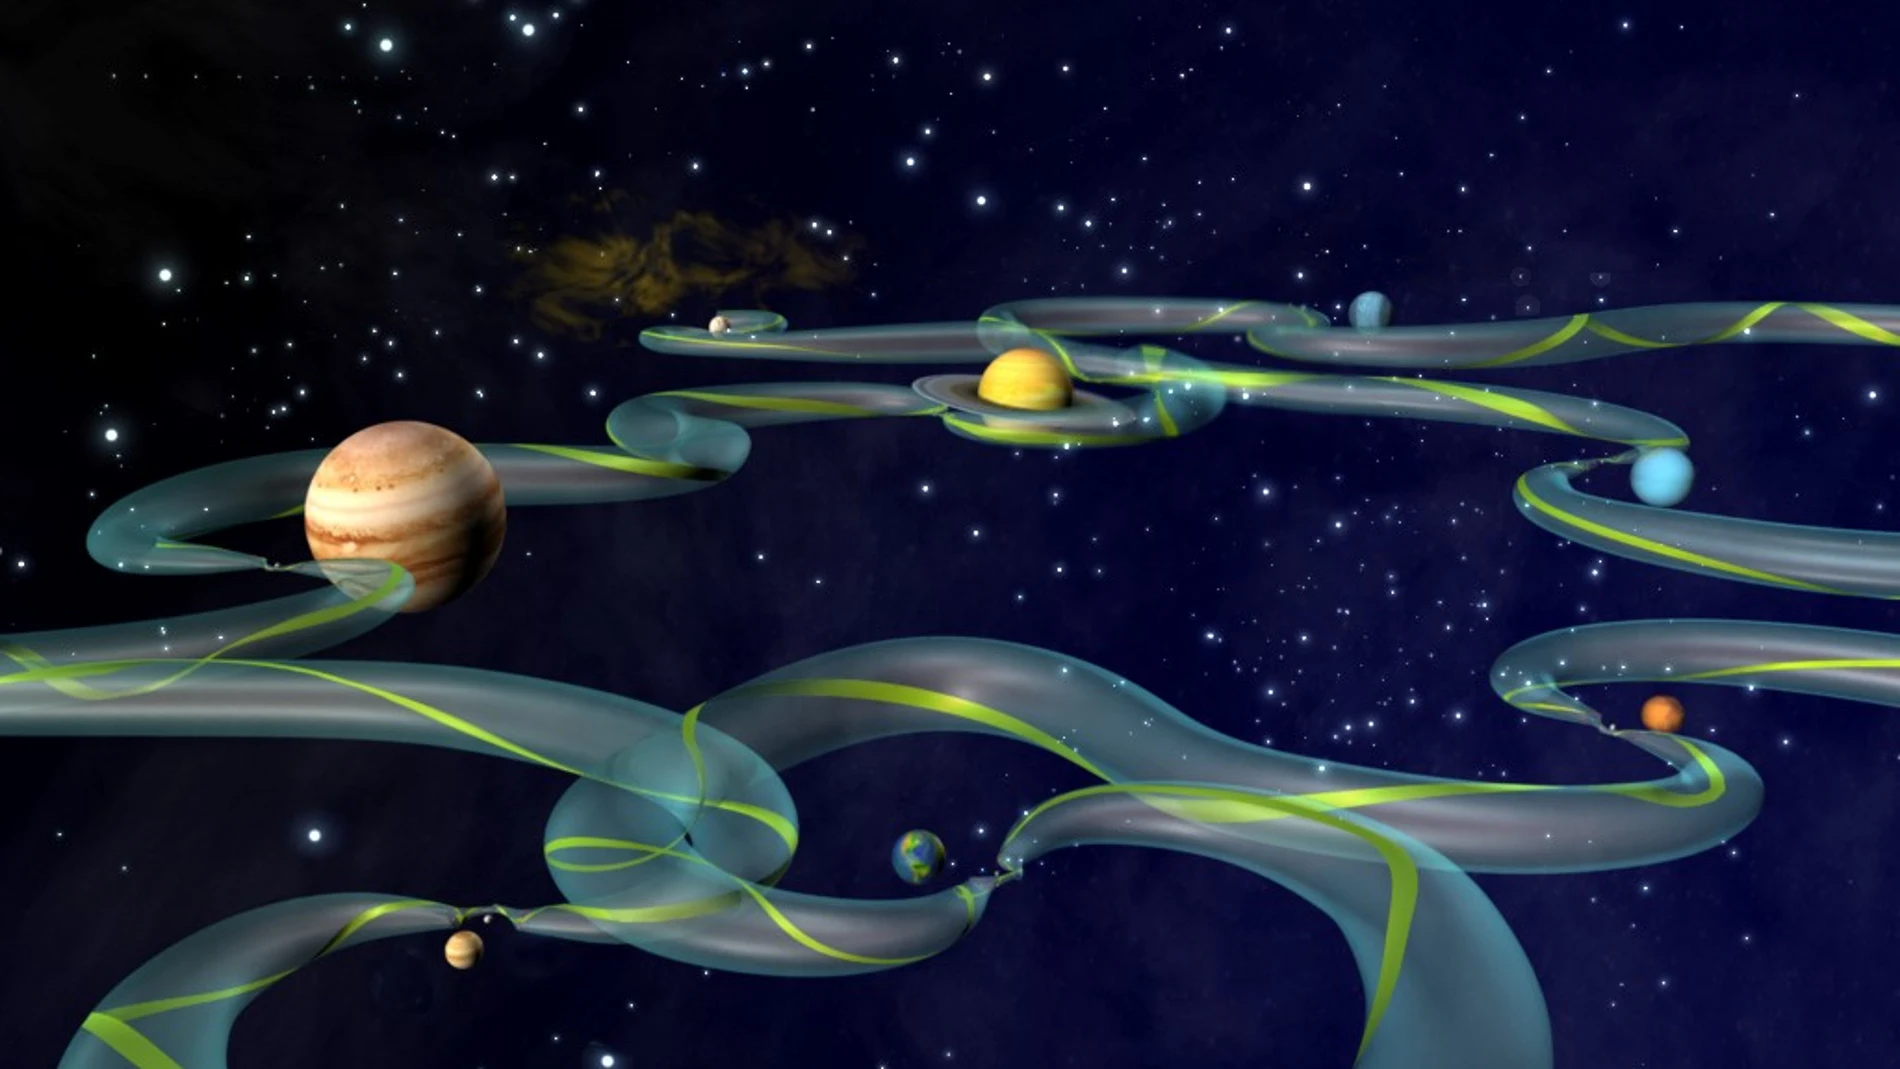 Representación artística mostrando la superautopista interplanetaria y uno de sus infinitos caminos marcado en verde.